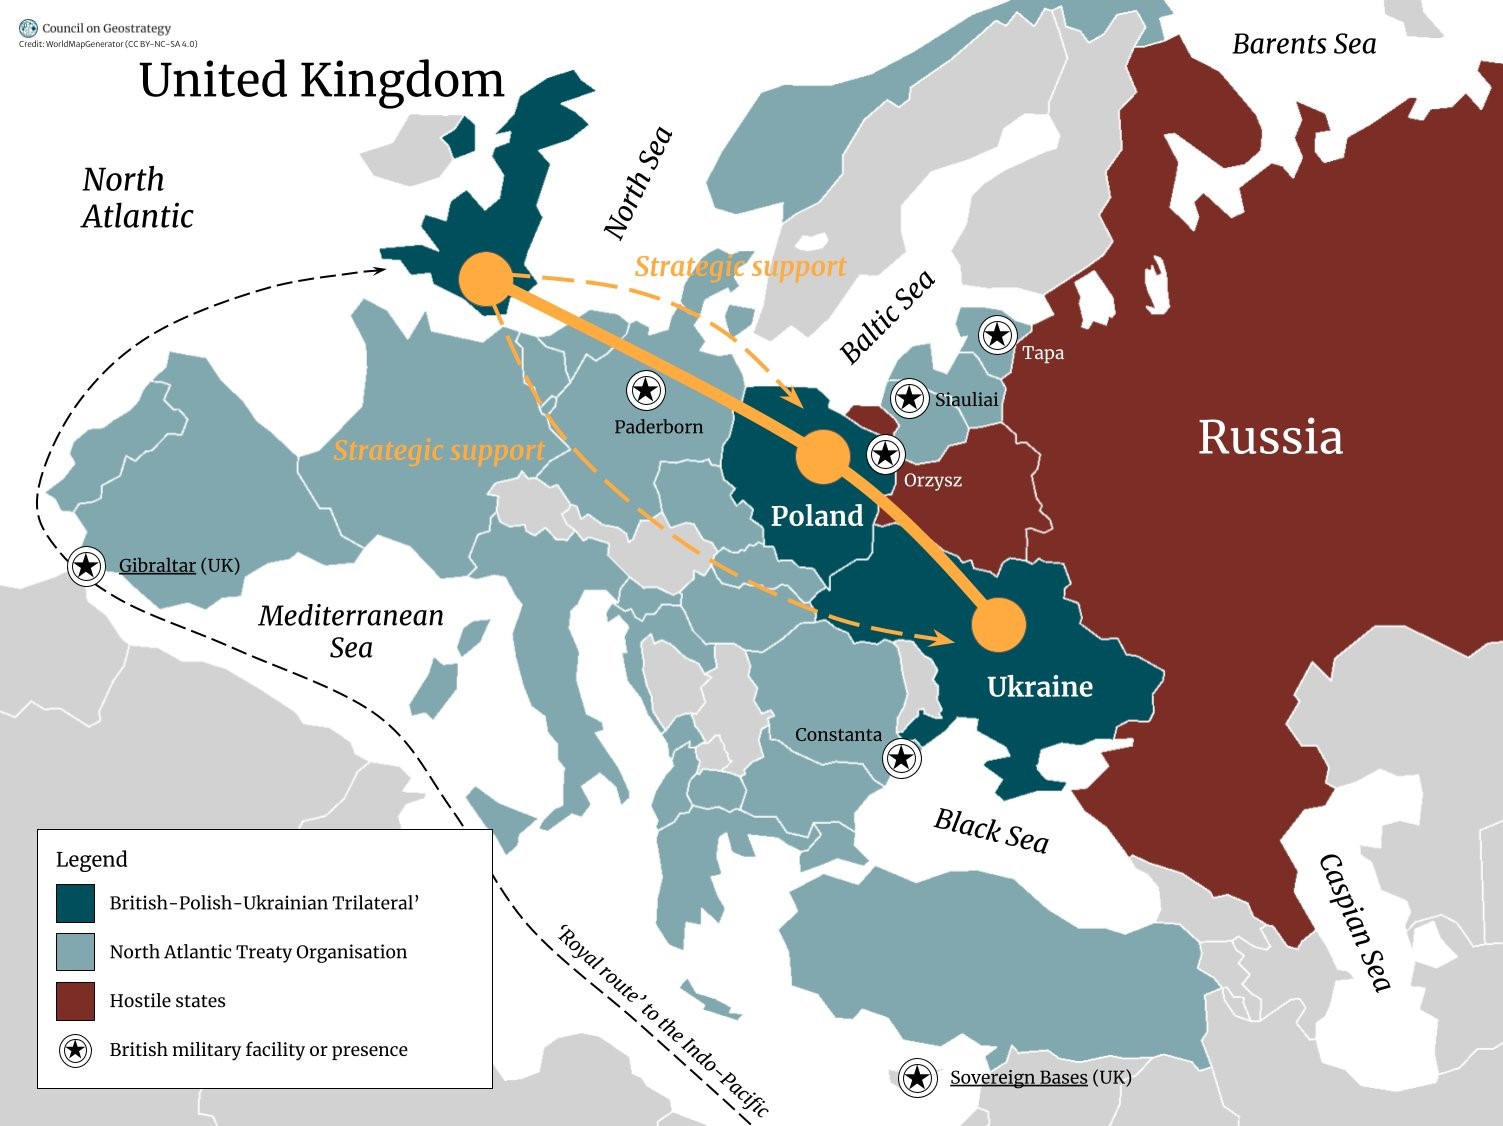 Британия хочет новые связи с Украиной и Польшей. Аналитики видят линию Лондон-Варшава-Киев